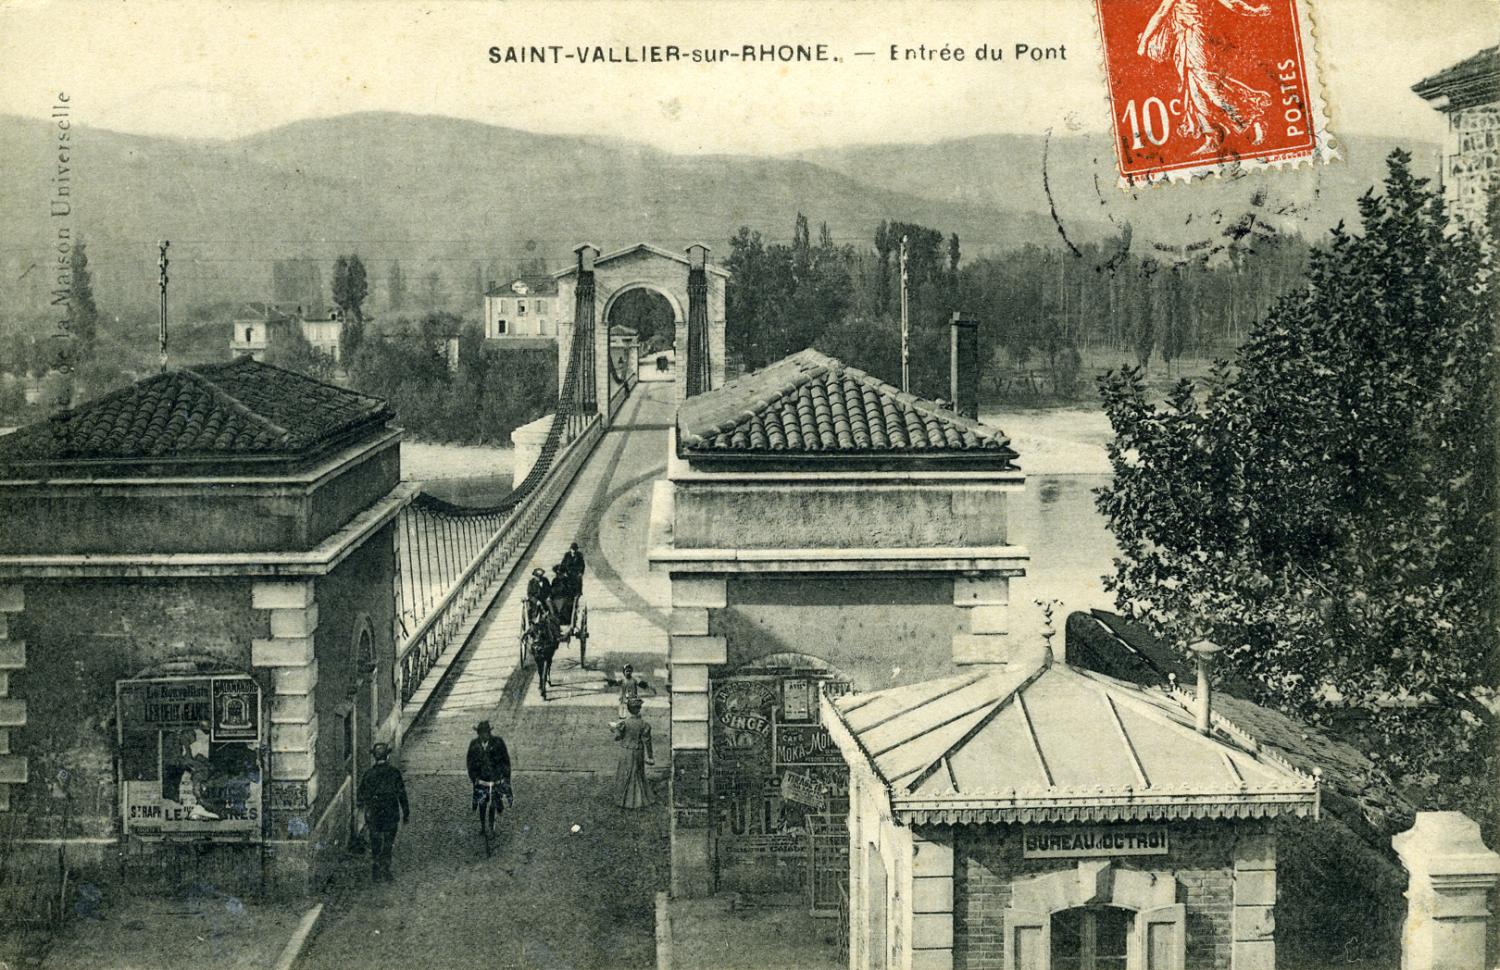 St-Vallier-sur-Rhône